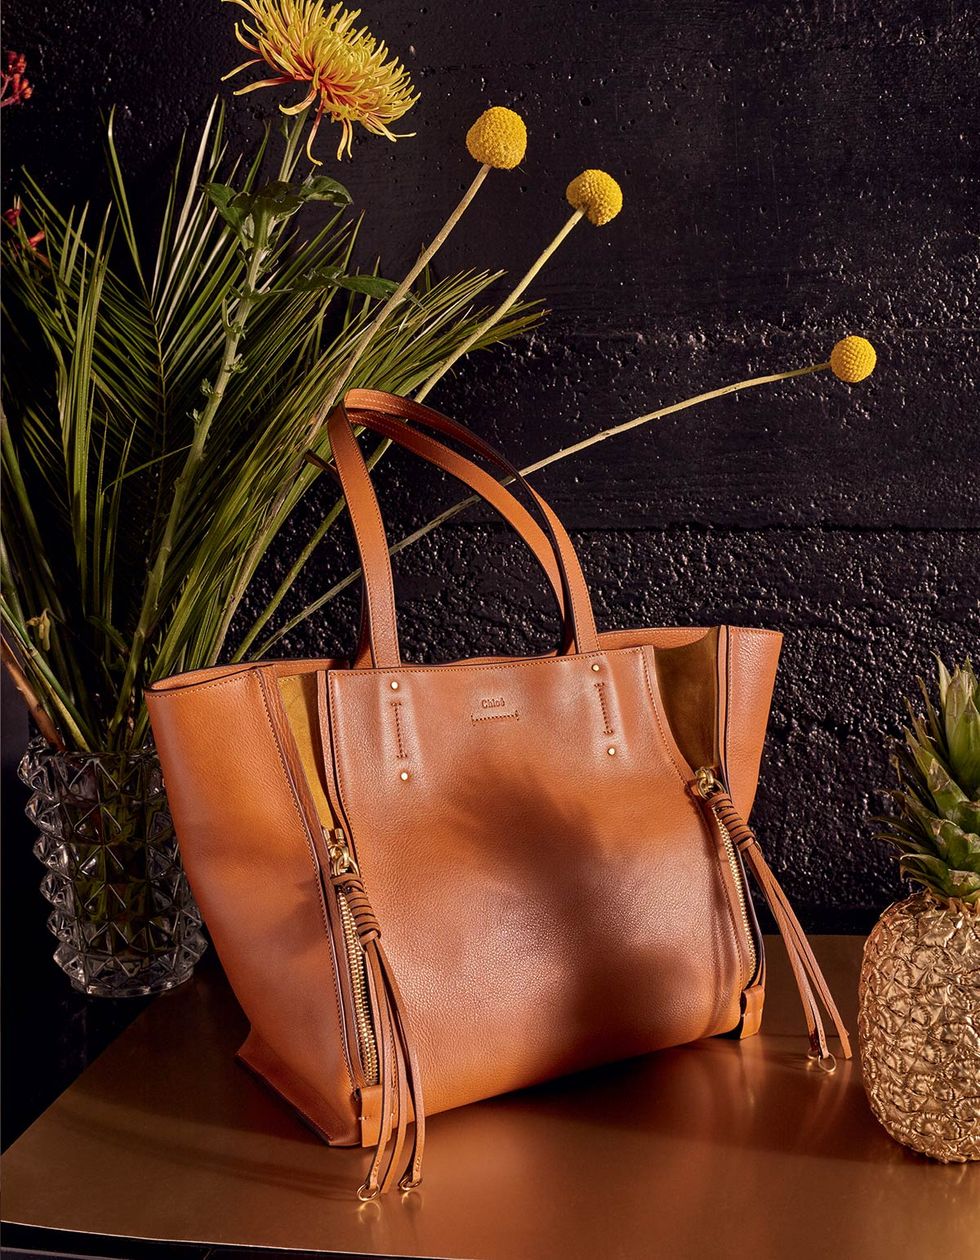 Bag, Shoulder bag, Tan, Still life photography, Leather, Flowering plant, Flower Arranging, Floral design, Flowerpot, Houseplant, 